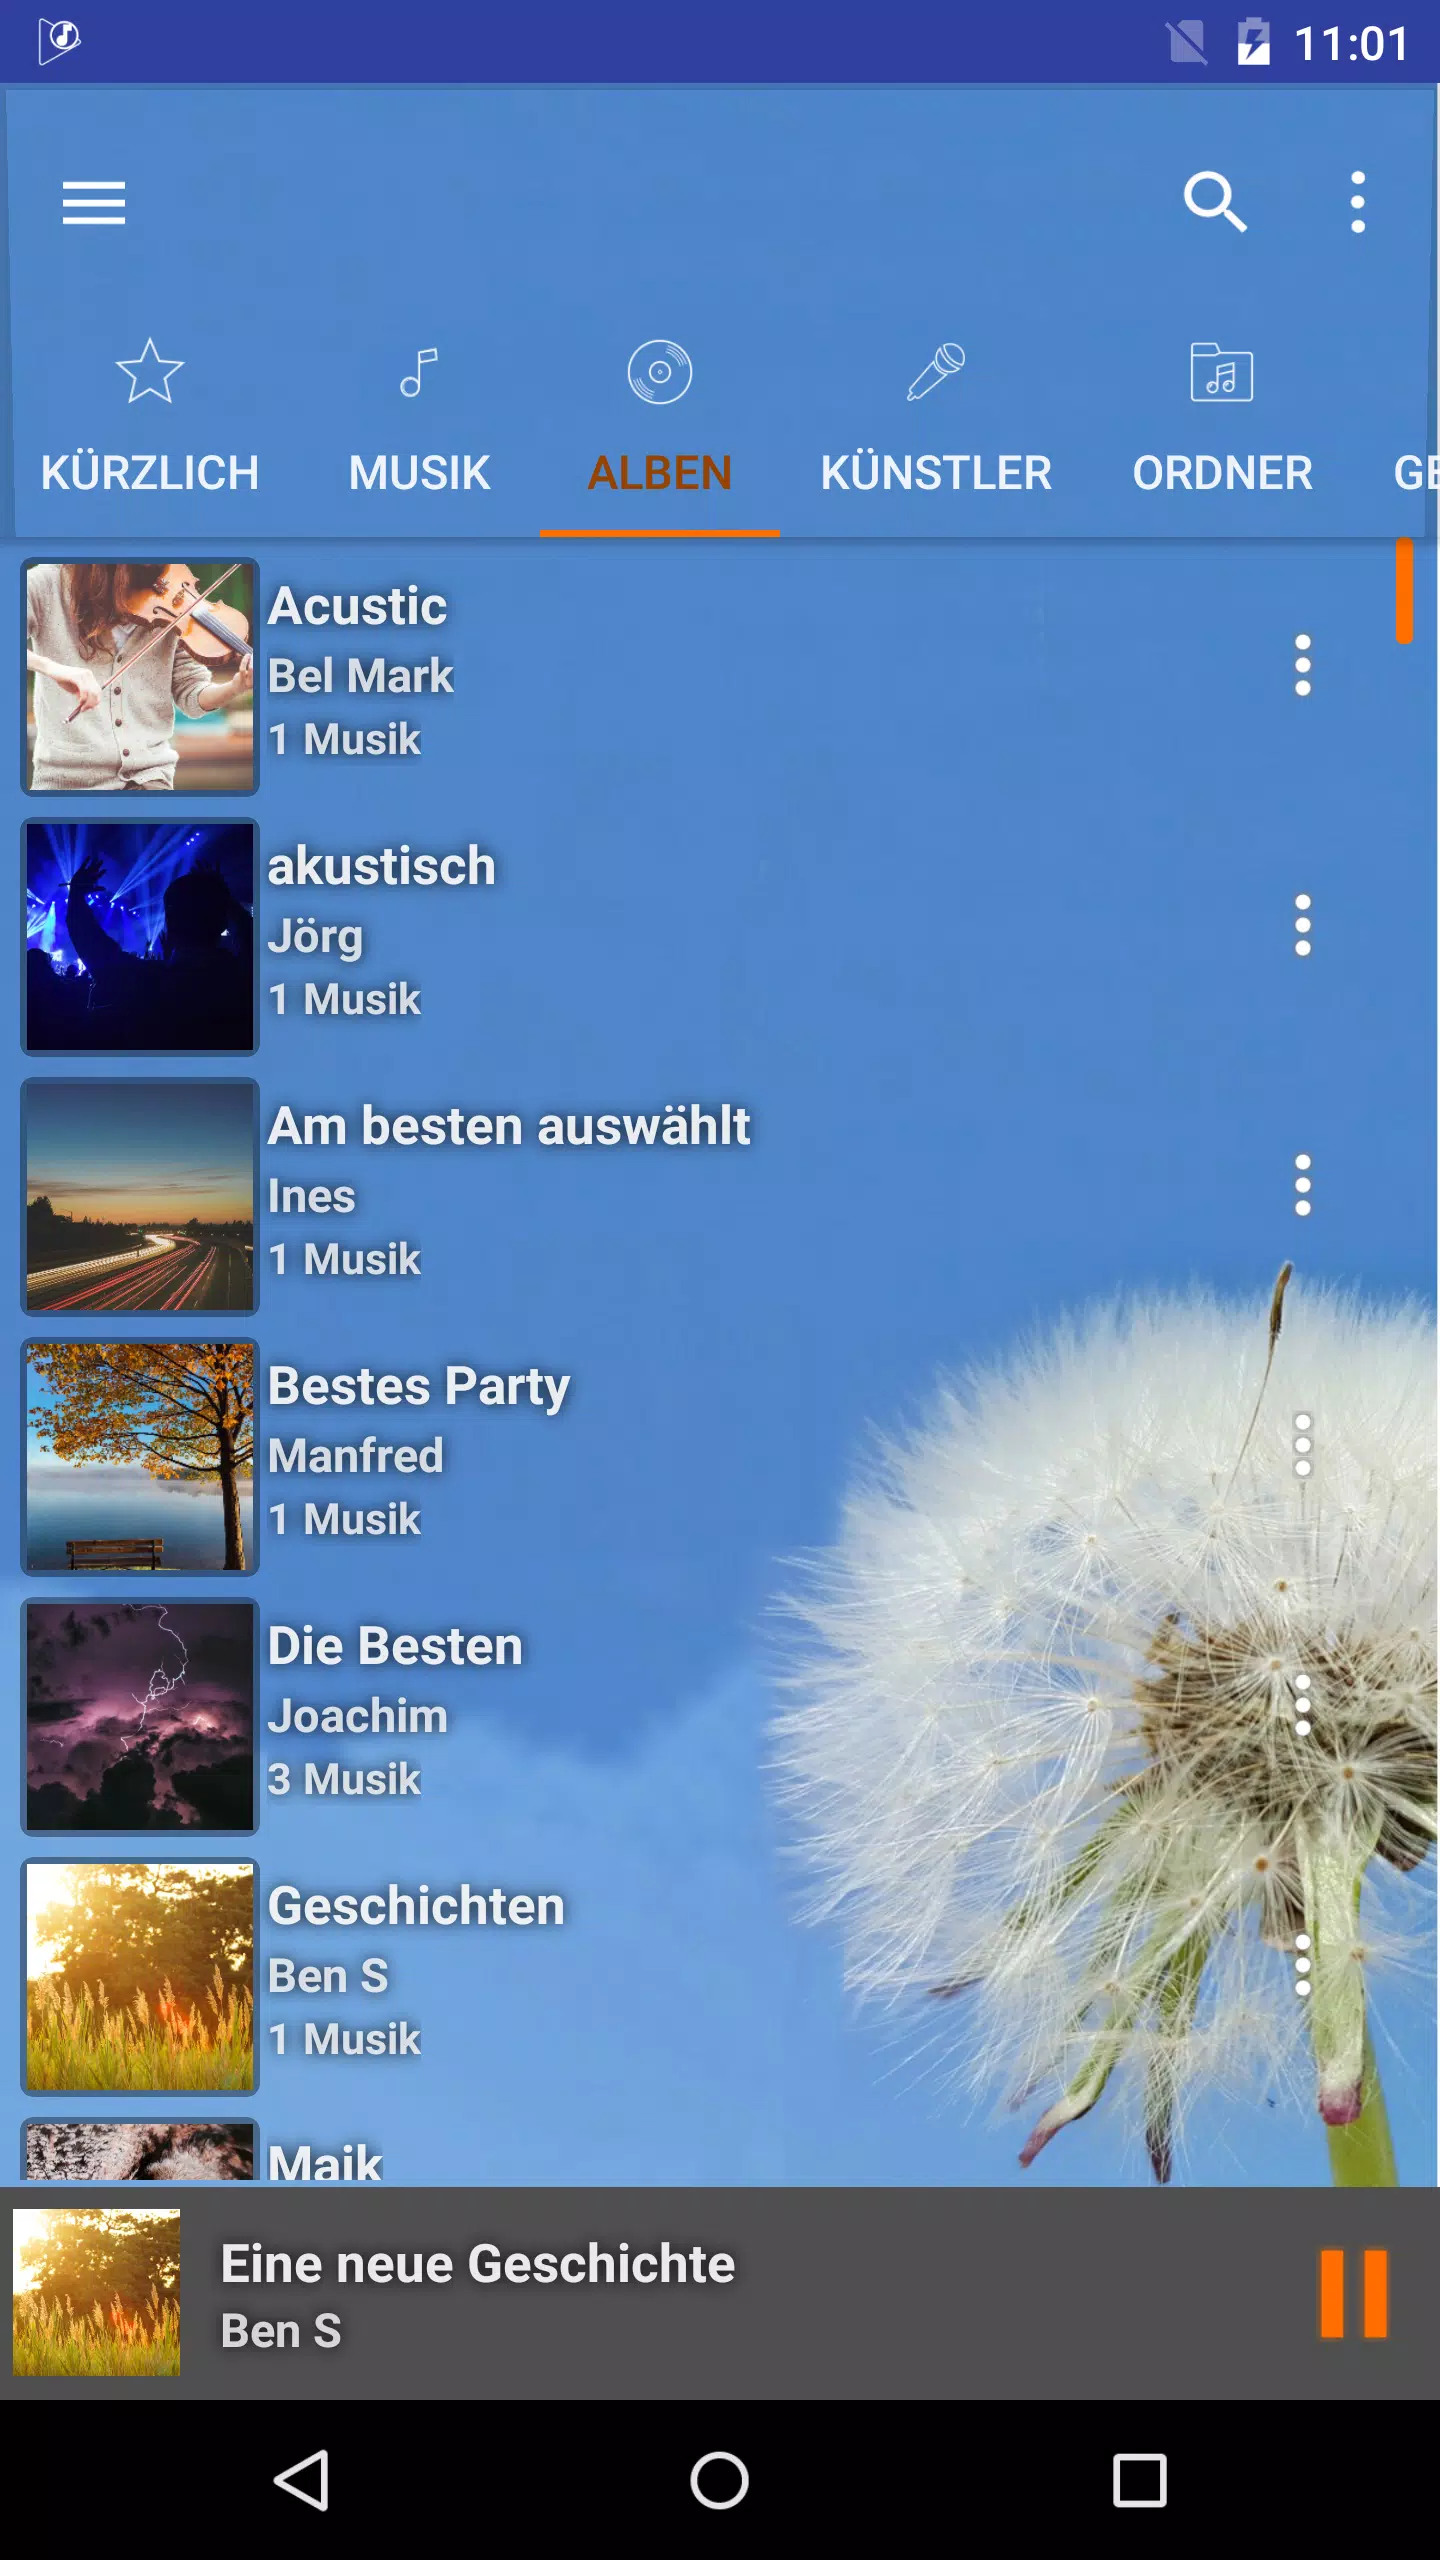 Musikspieler HD+ Entzerrer für Android - APK herunterladen